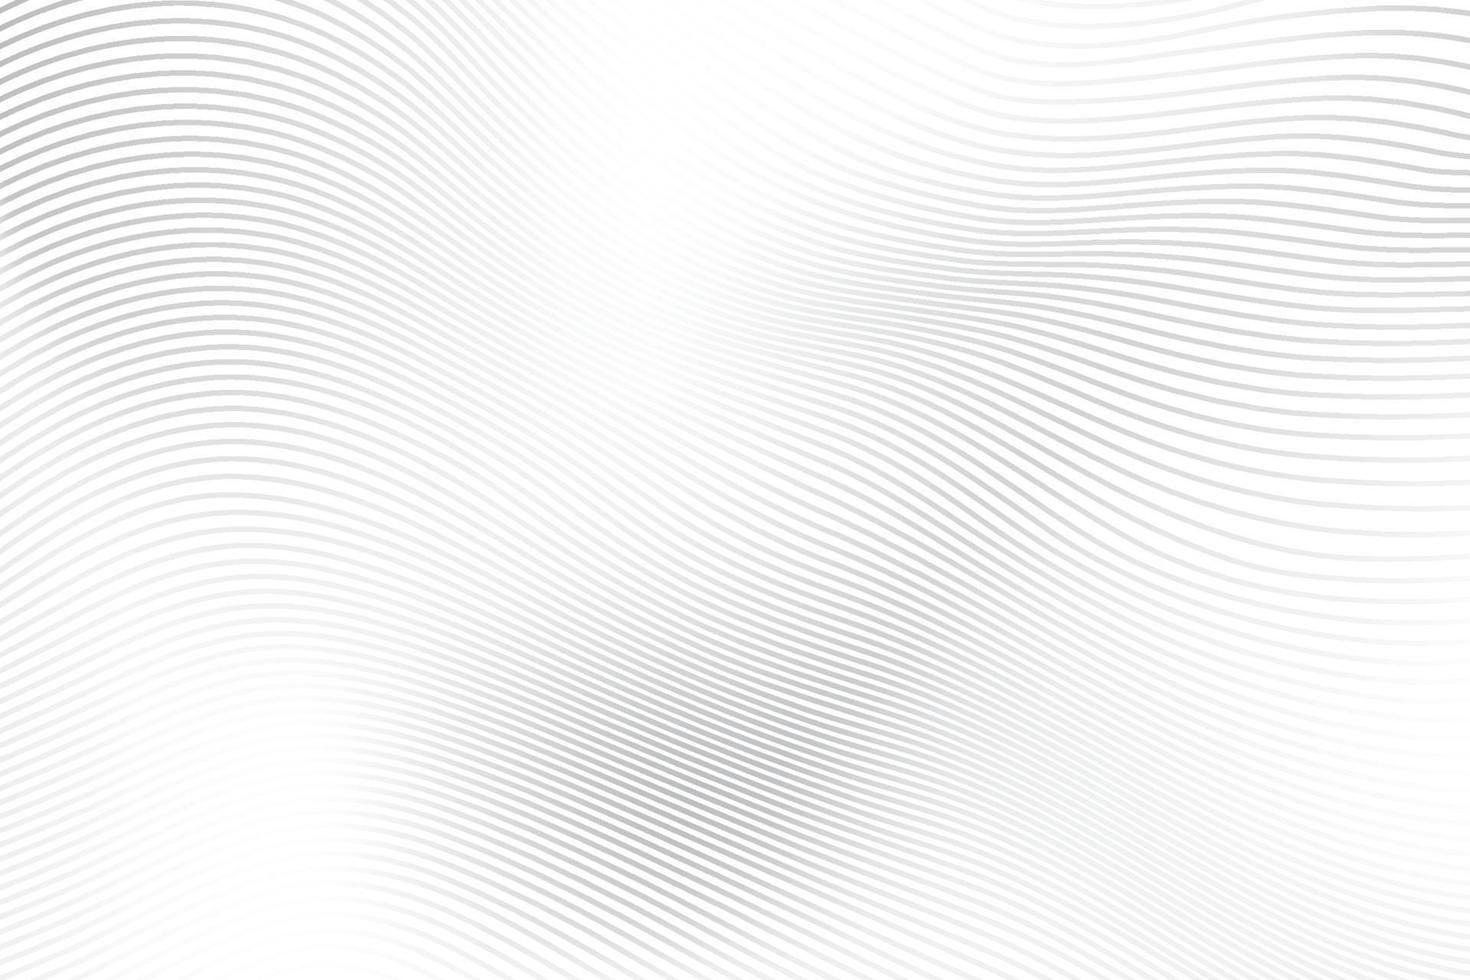 astratto bianca e grigio colore, moderno design strisce sfondo con geometrico il giro forma, onda modello. vettore illustrazione.